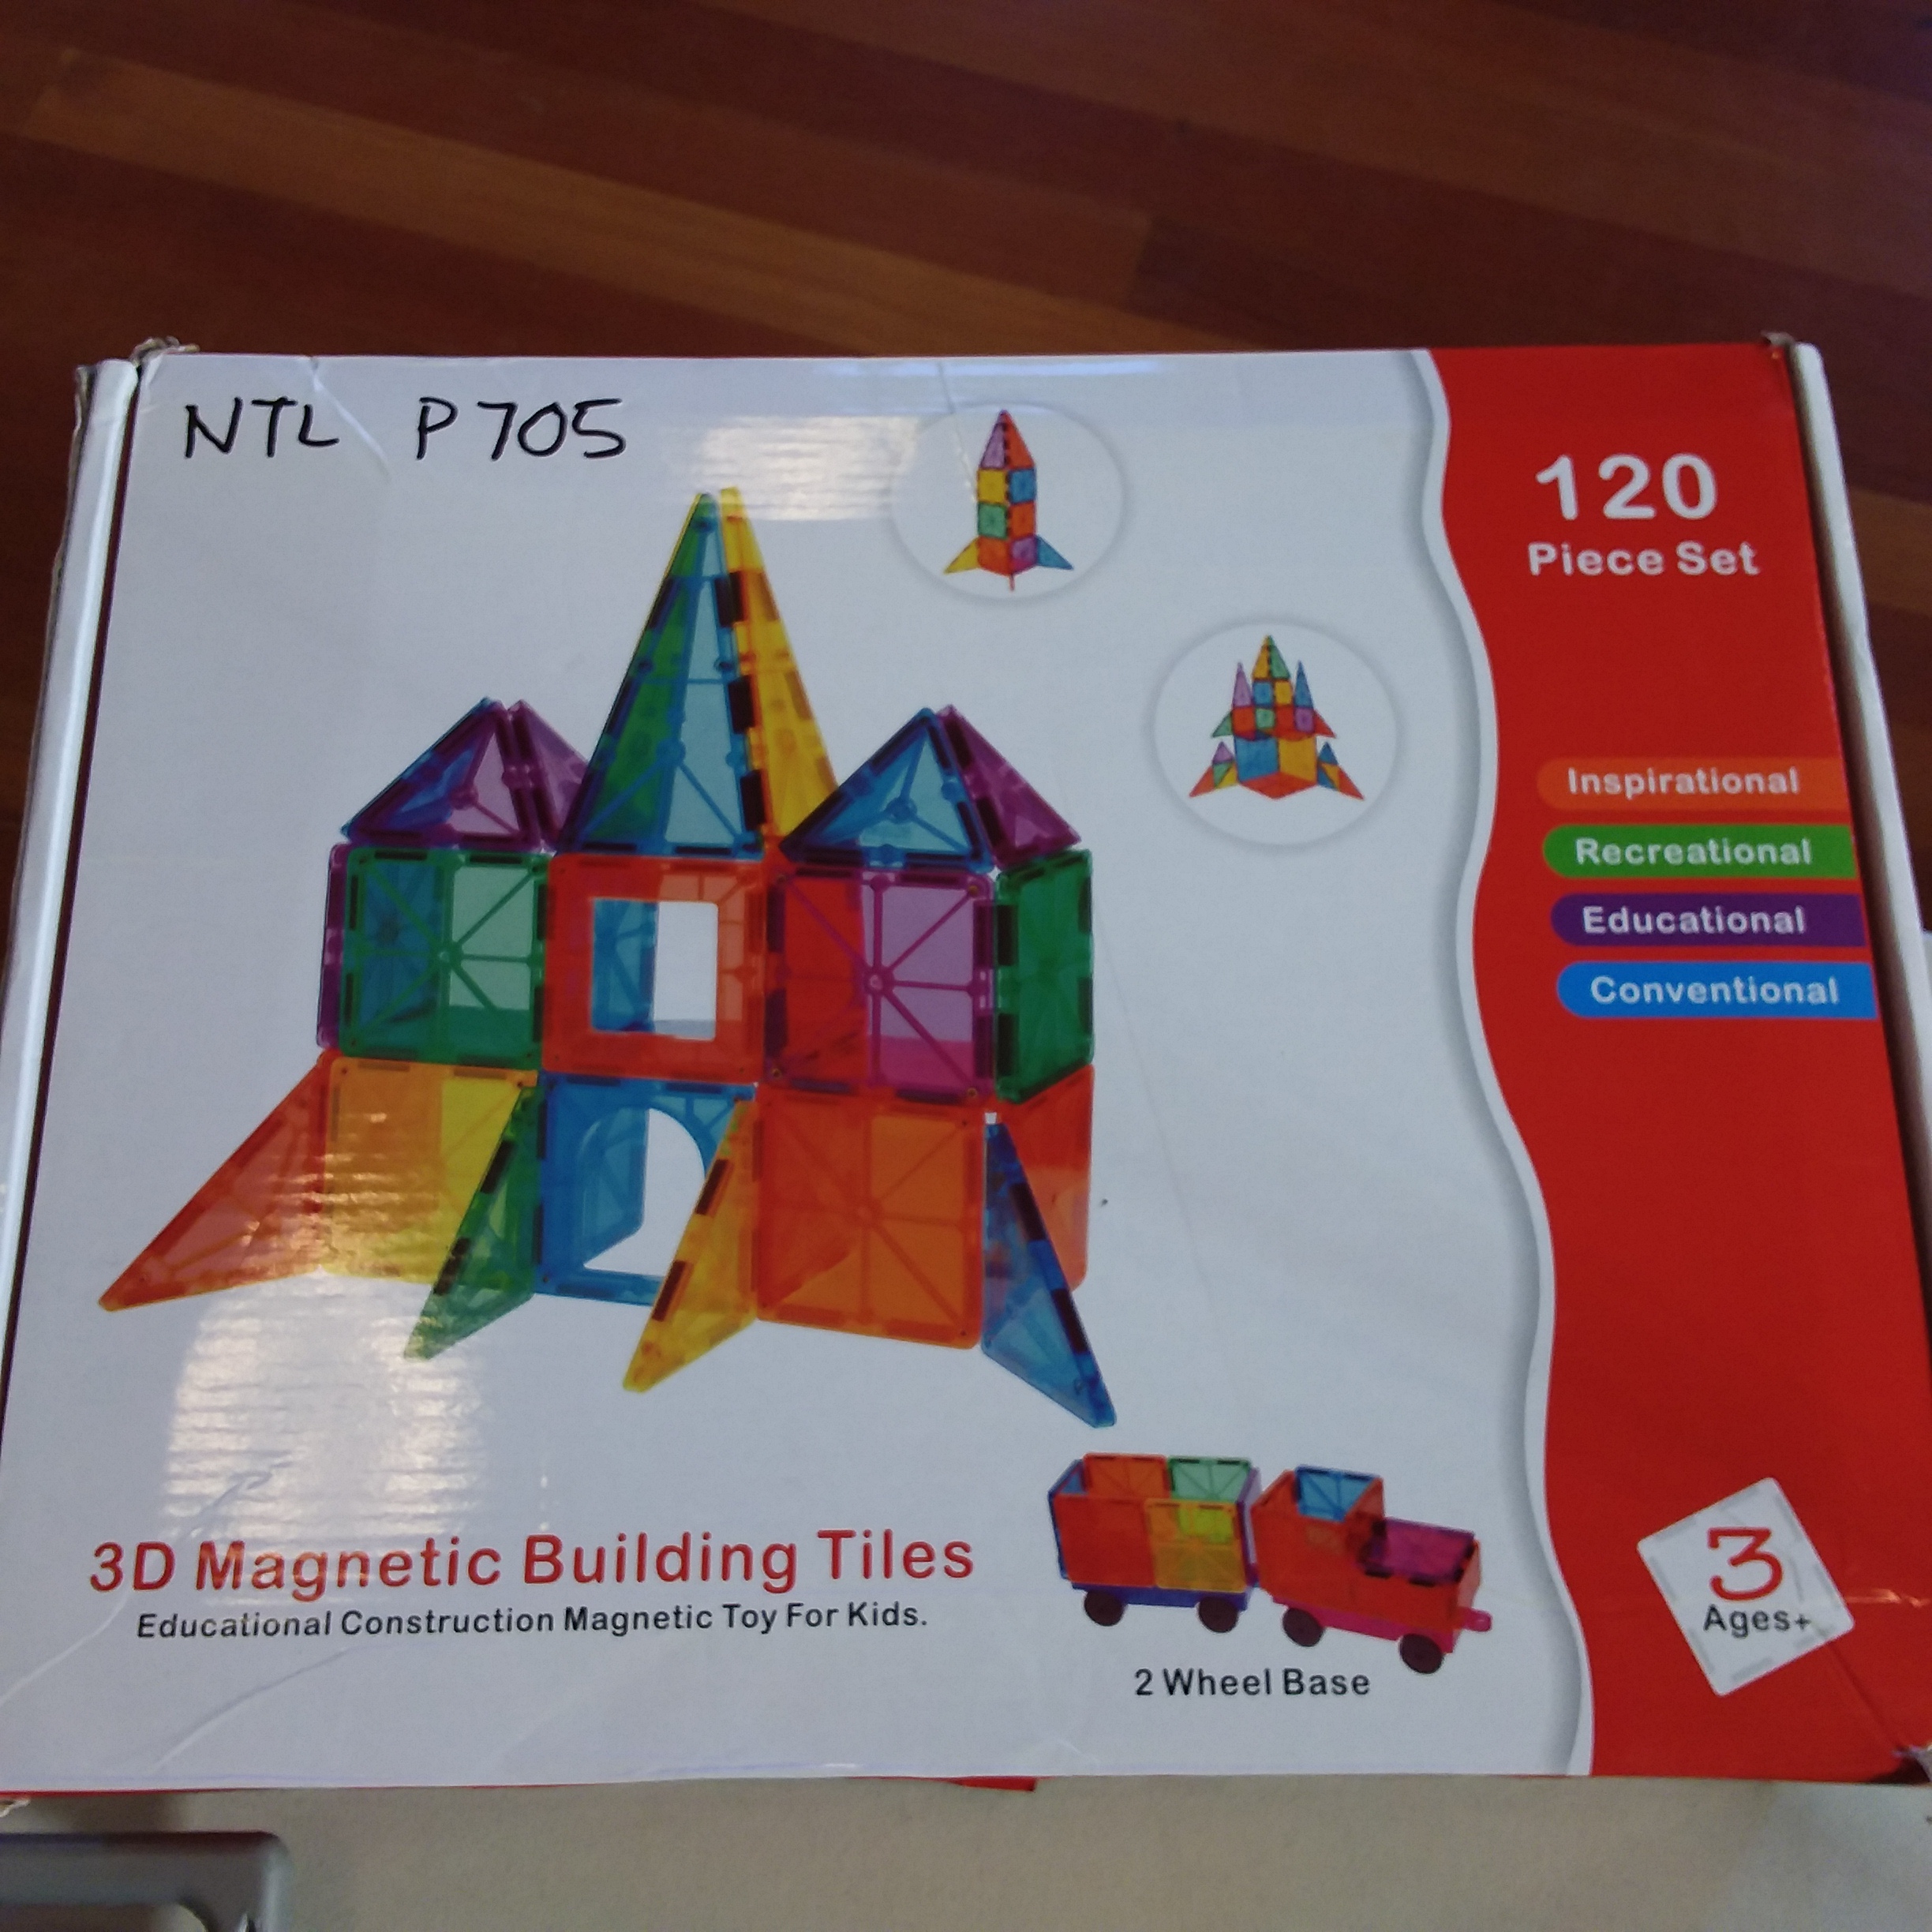 3D Magnetic Building Tiles